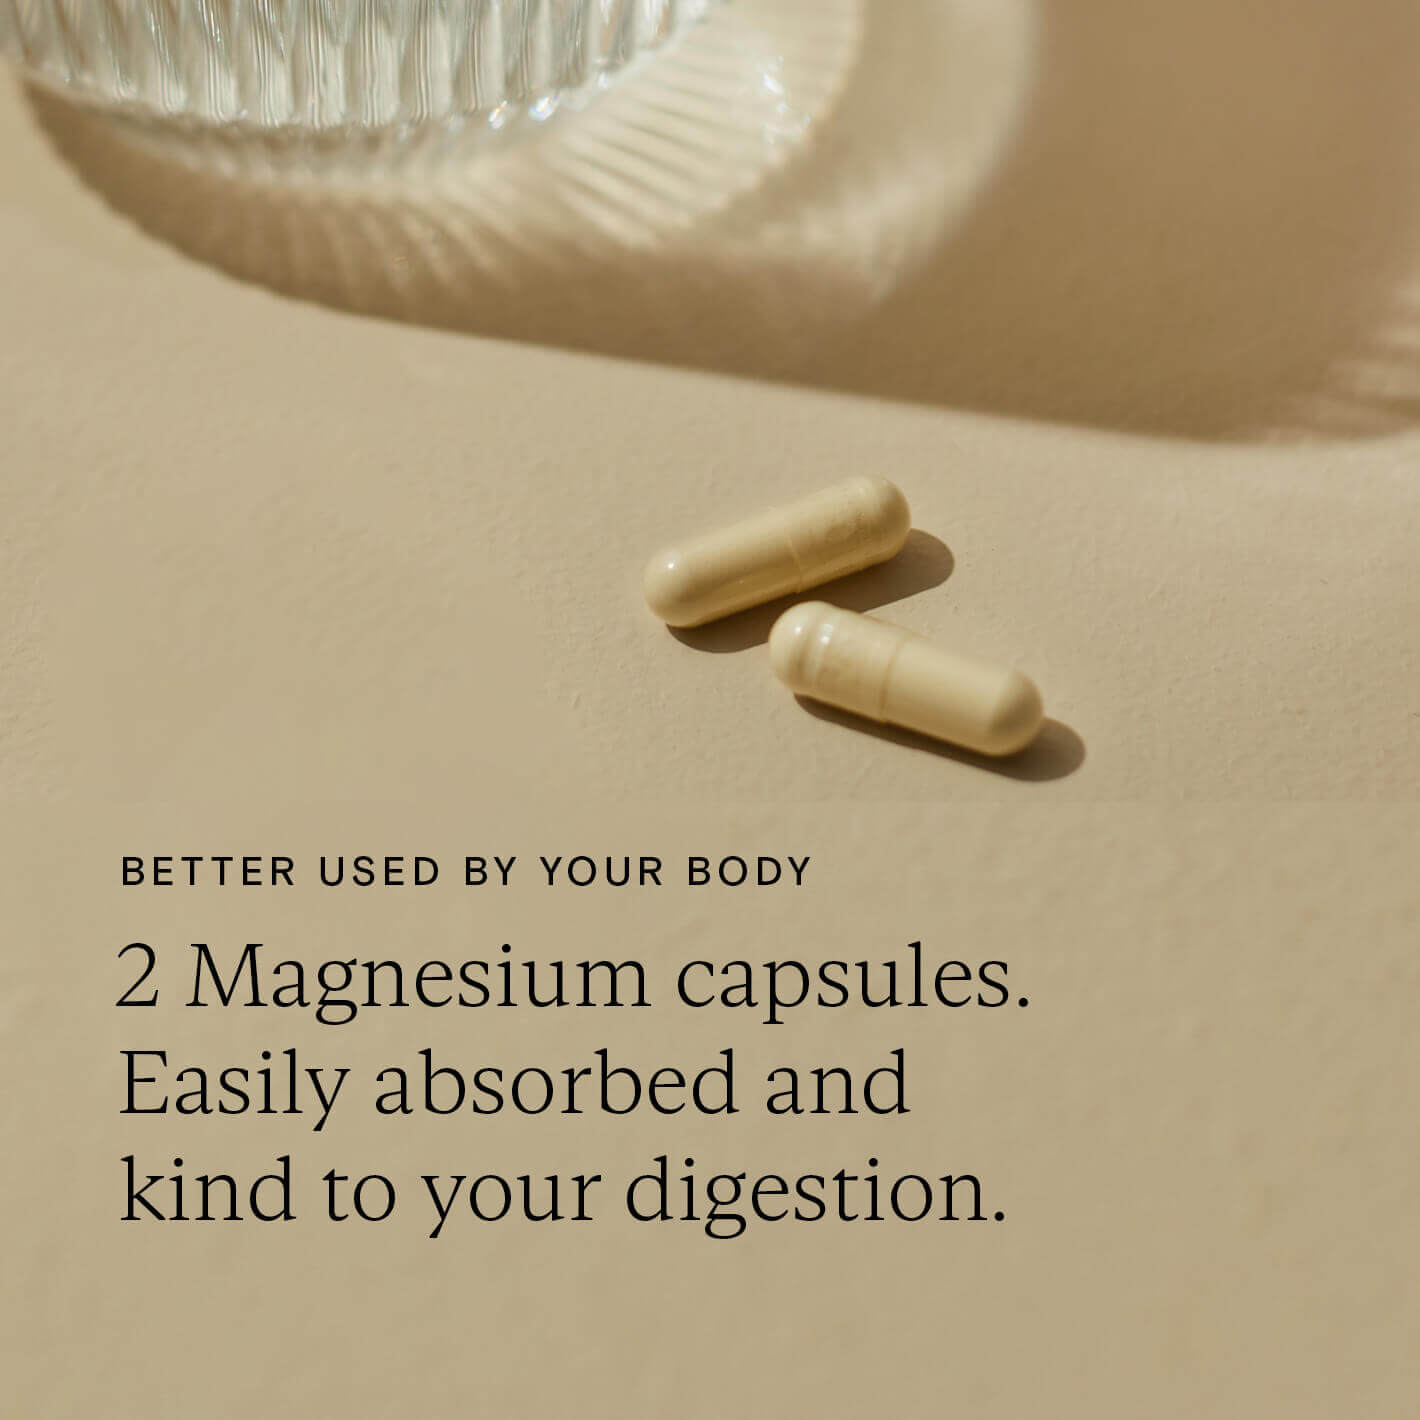 Food-Grown® Magnesium